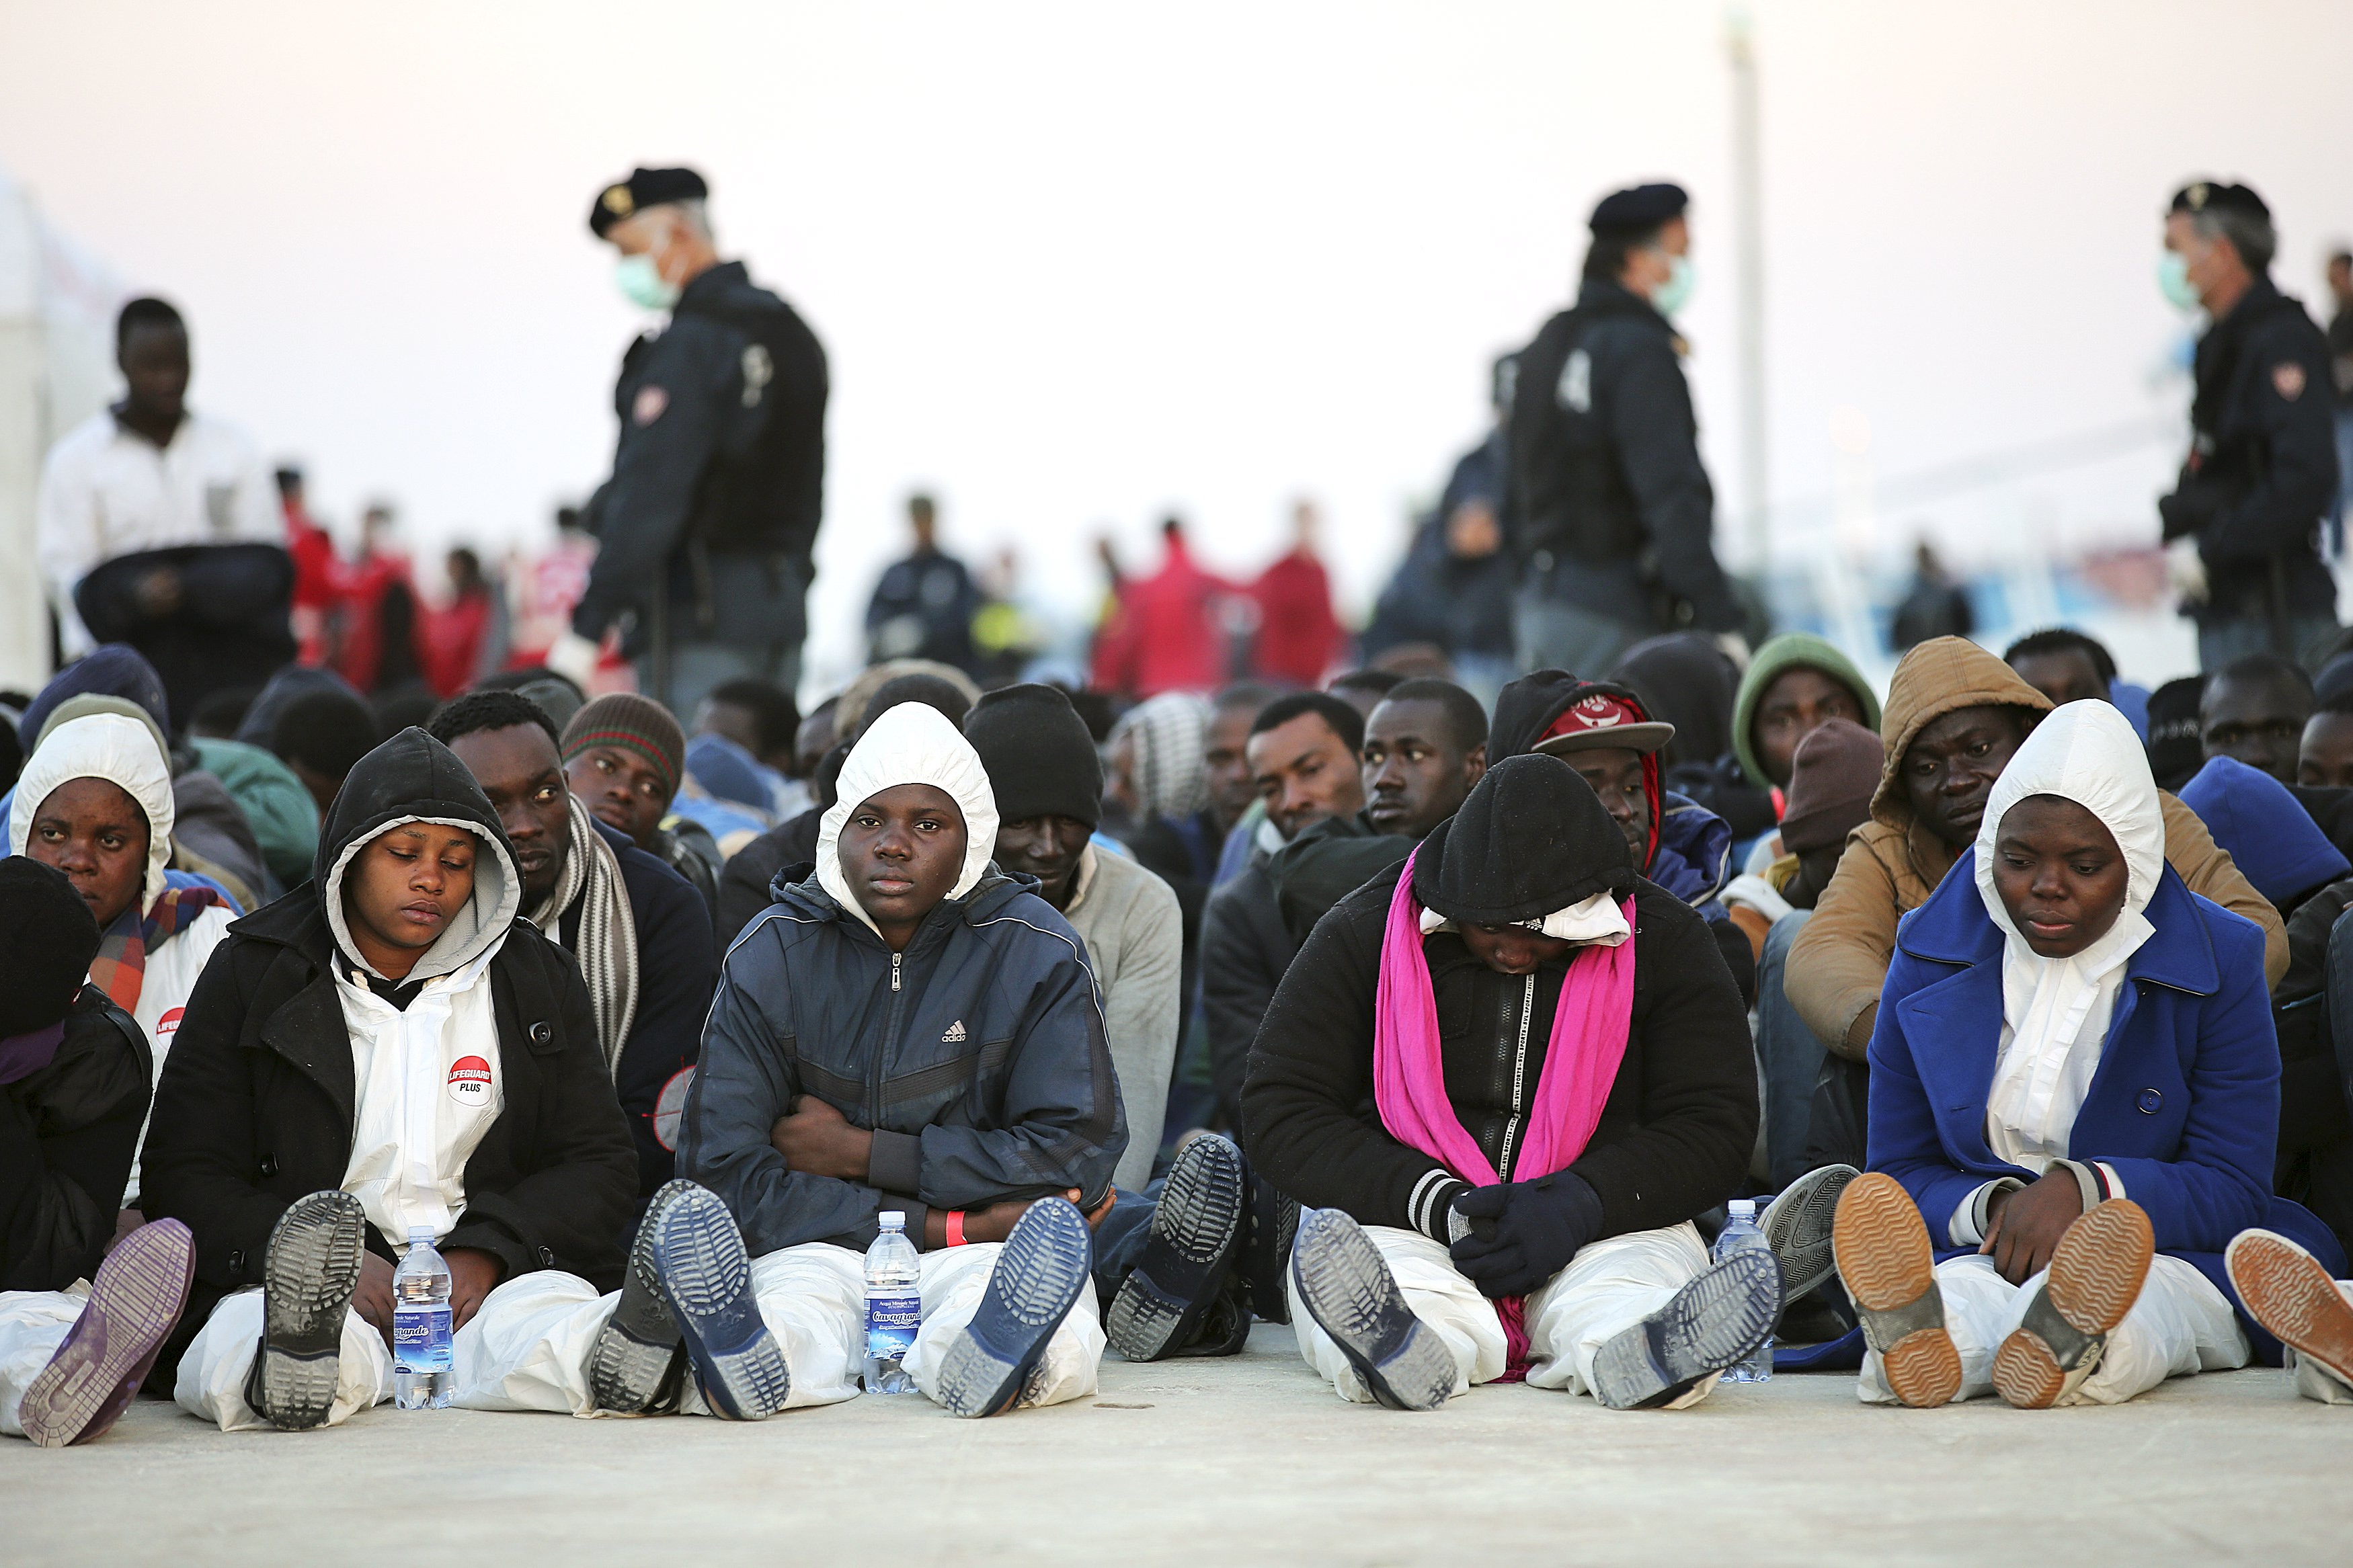 Группа эмигранты. Мигранты из Африки. Мигранты из Африки в Европе. Эмигранты в Италии. Беженцы из Африки в Европу.